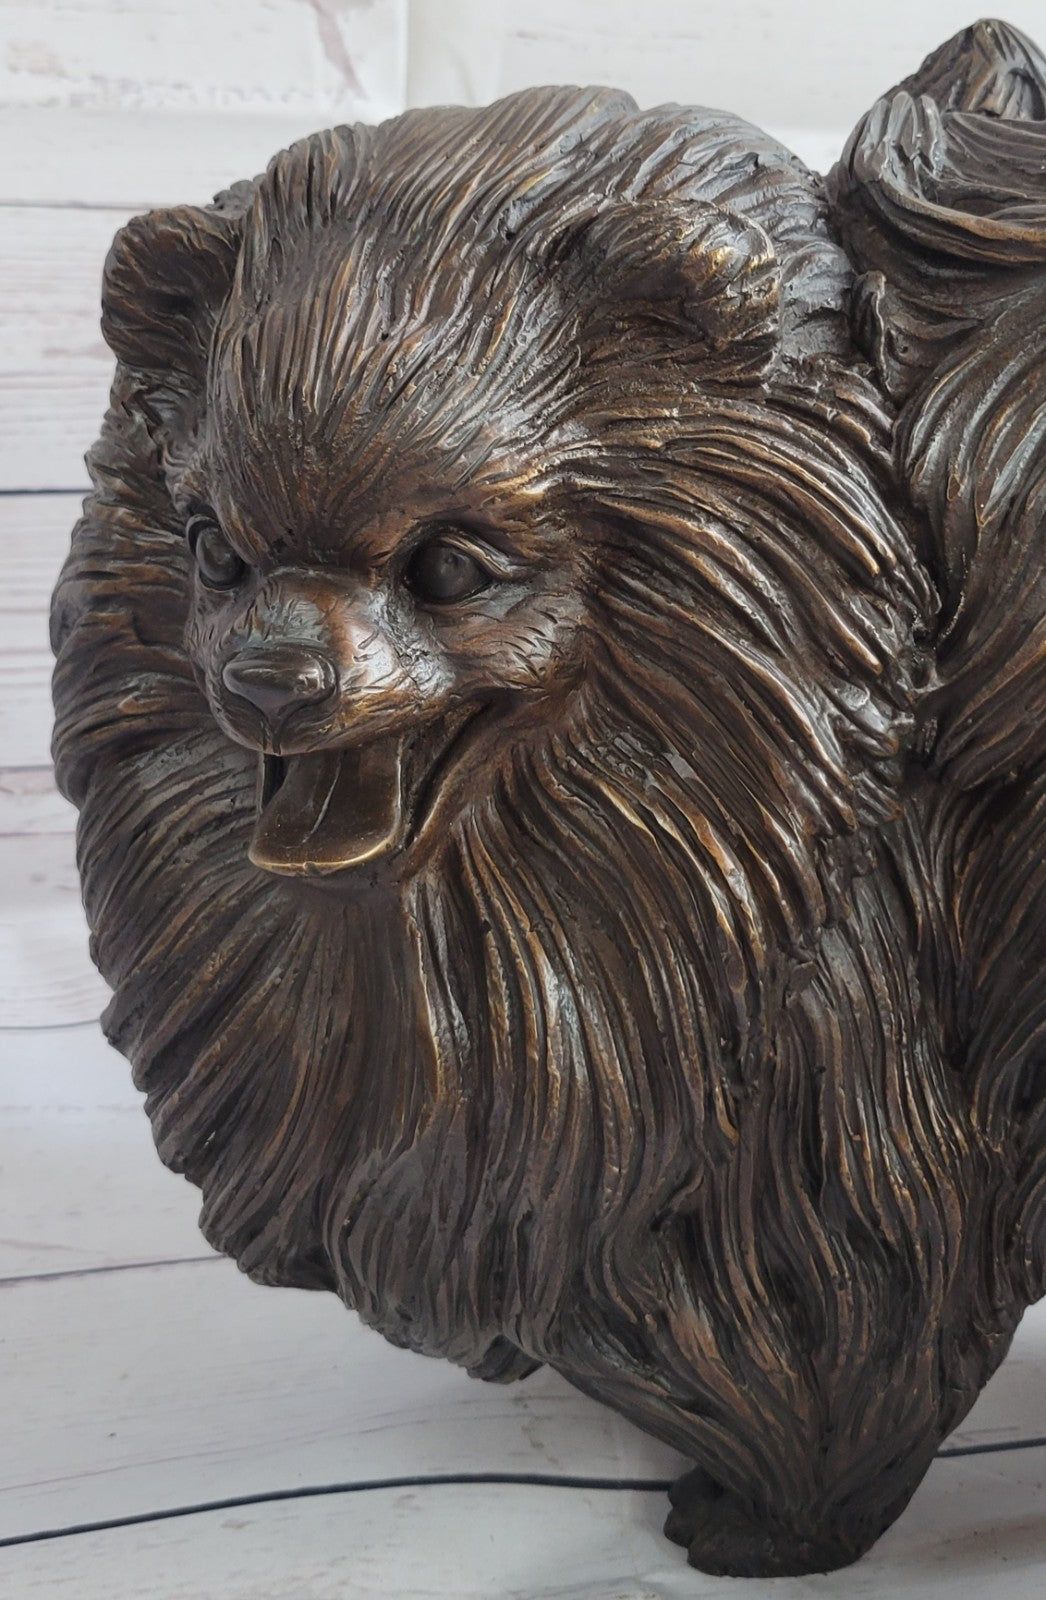 Pomeranian dog - a Extra Large statuette of bronze, metal figurine sculpture Art